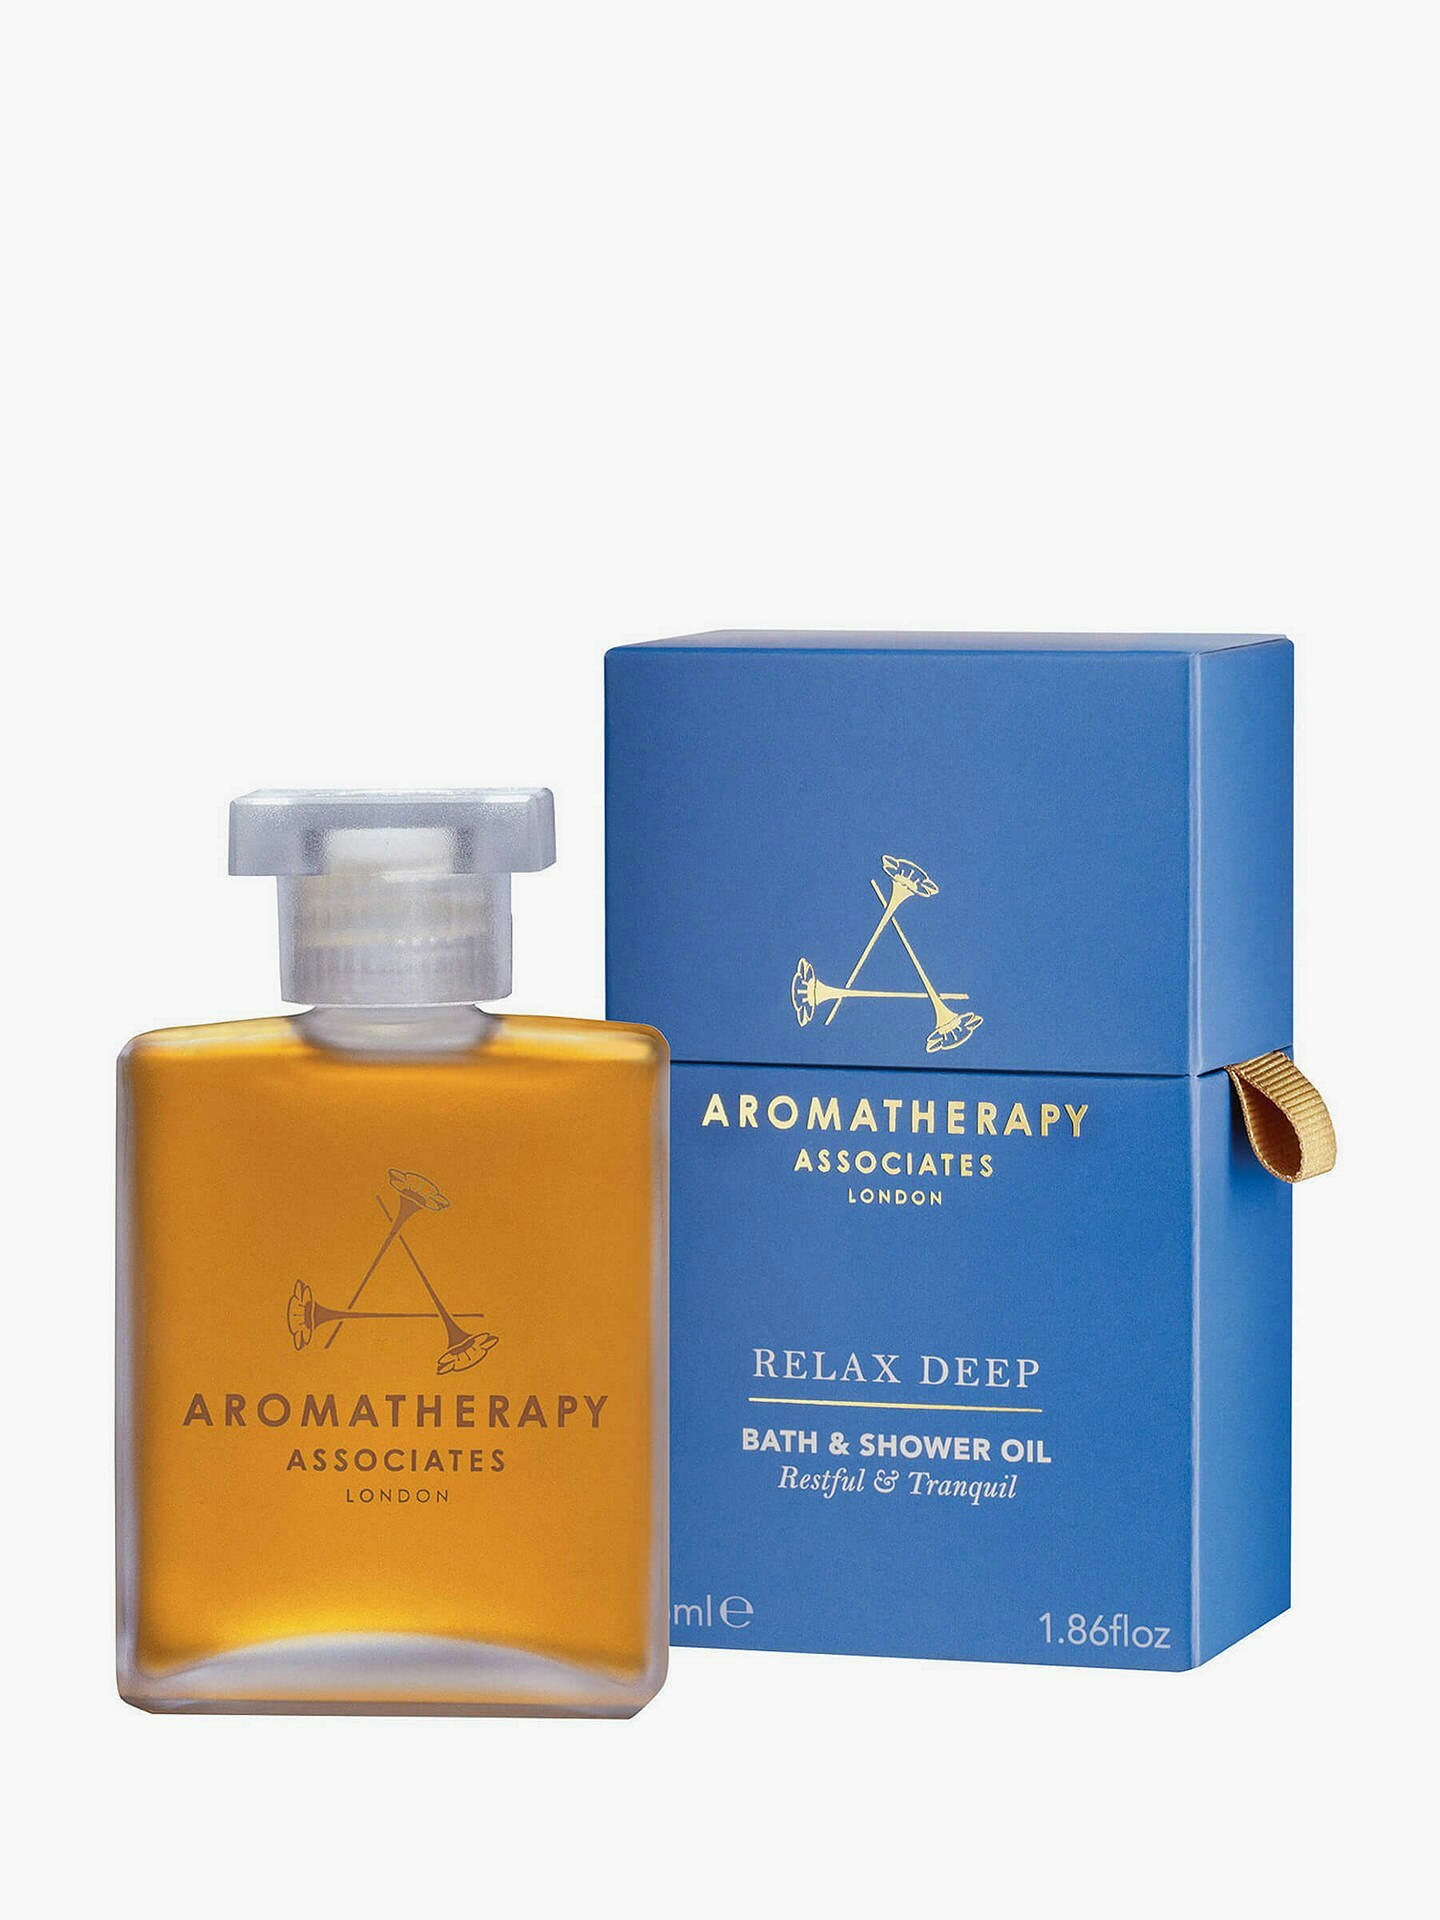 Aromatherapy oil